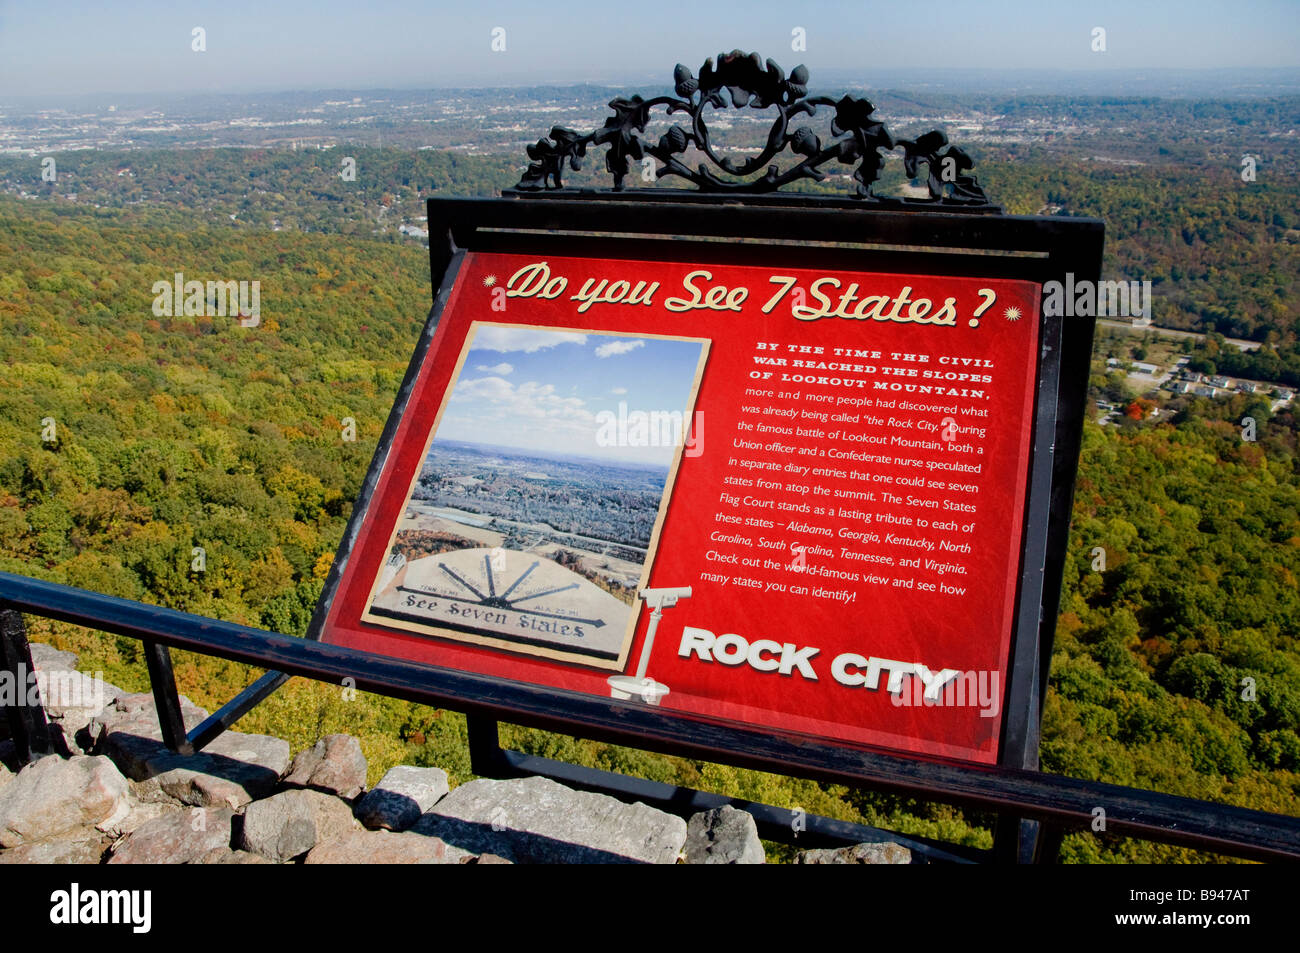 Schild am sieben Staaten Plaza im Rock City Gardens auf Lookout Mountain in der Nähe von Chattanooga, Tennessee Stockfoto